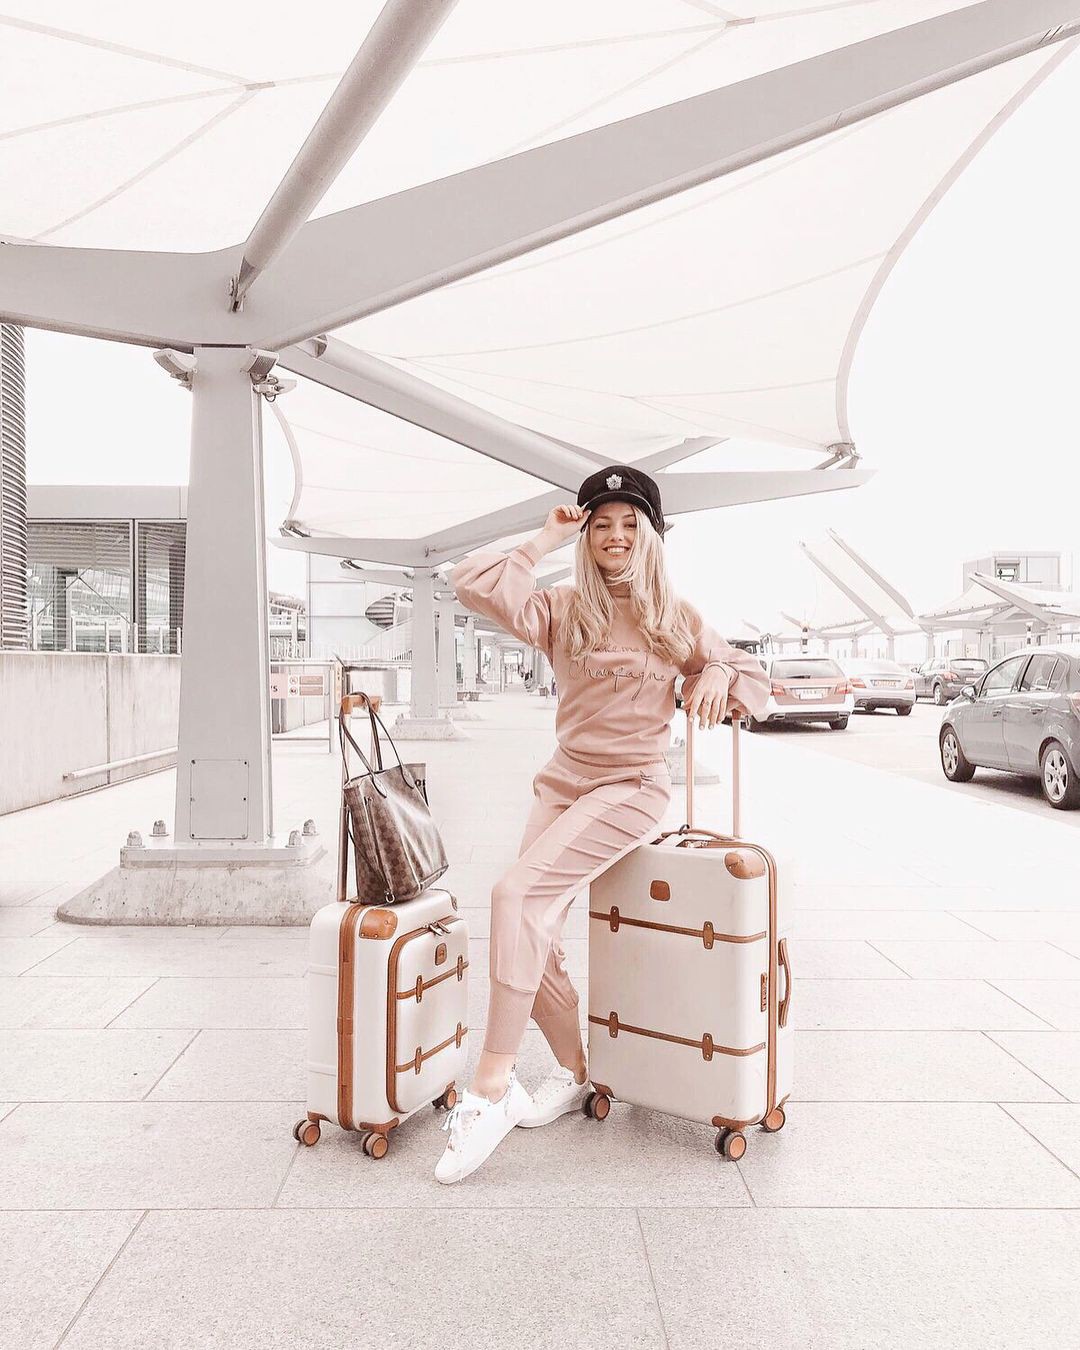 Instagram freddy primo marrón freddy primo marrón, freddy mi amor: traje blanco,  Ideas para vestir en el aeropuerto  